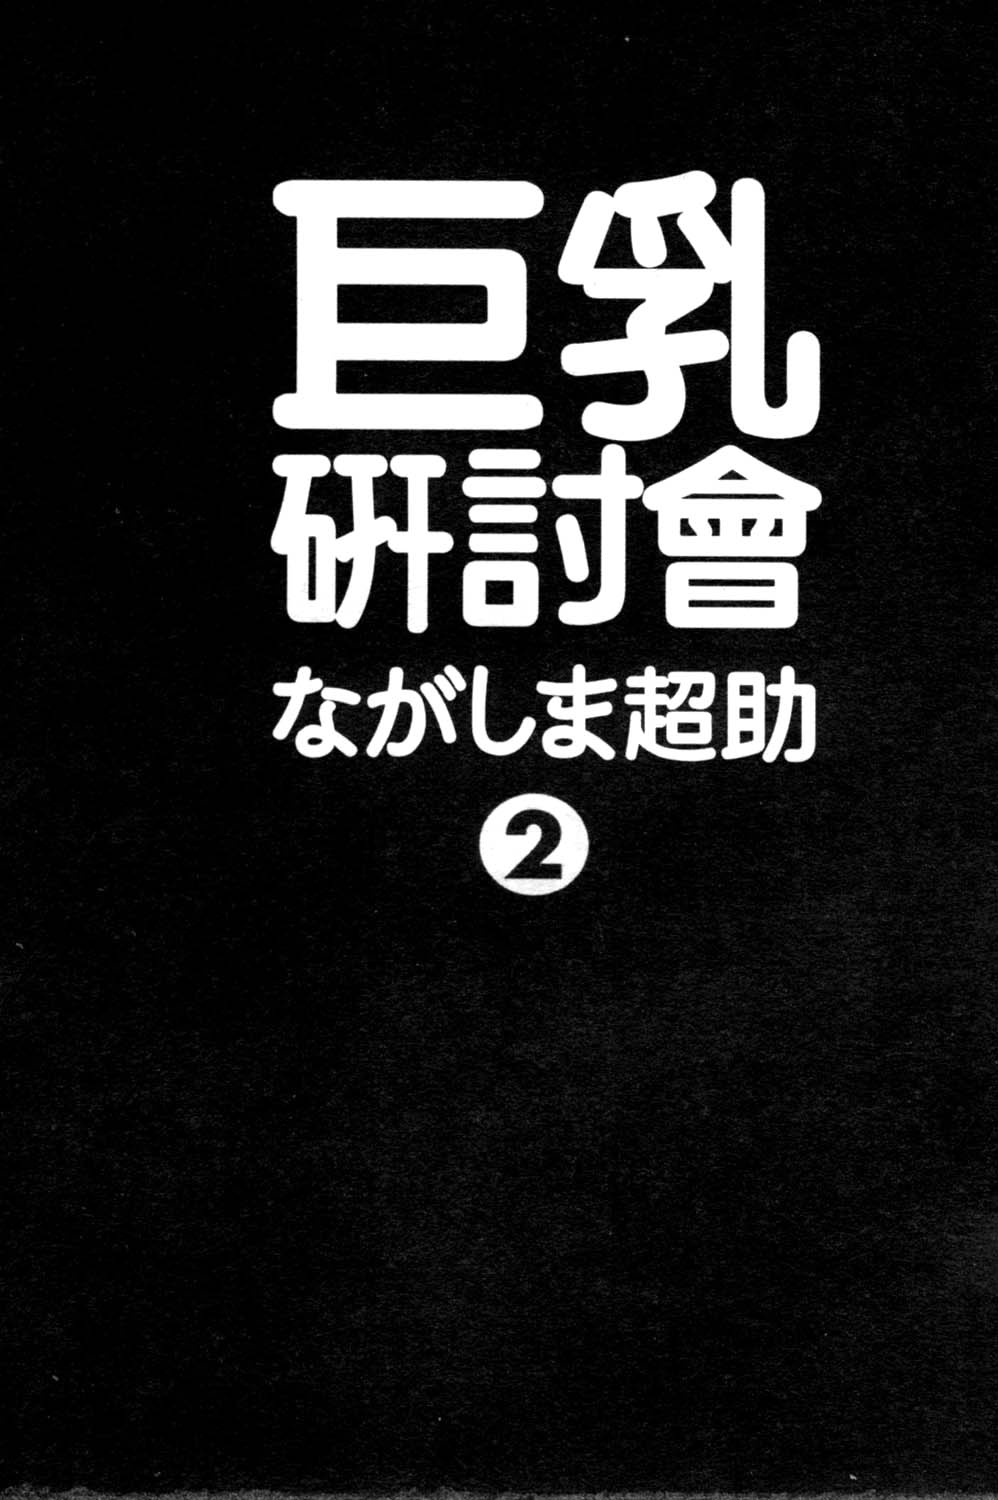 [Nagashima Chosuke] Pururun Seminar 2 [Chinese] [ながしま超助] ぷるるんゼミナール 2 [中国翻訳]